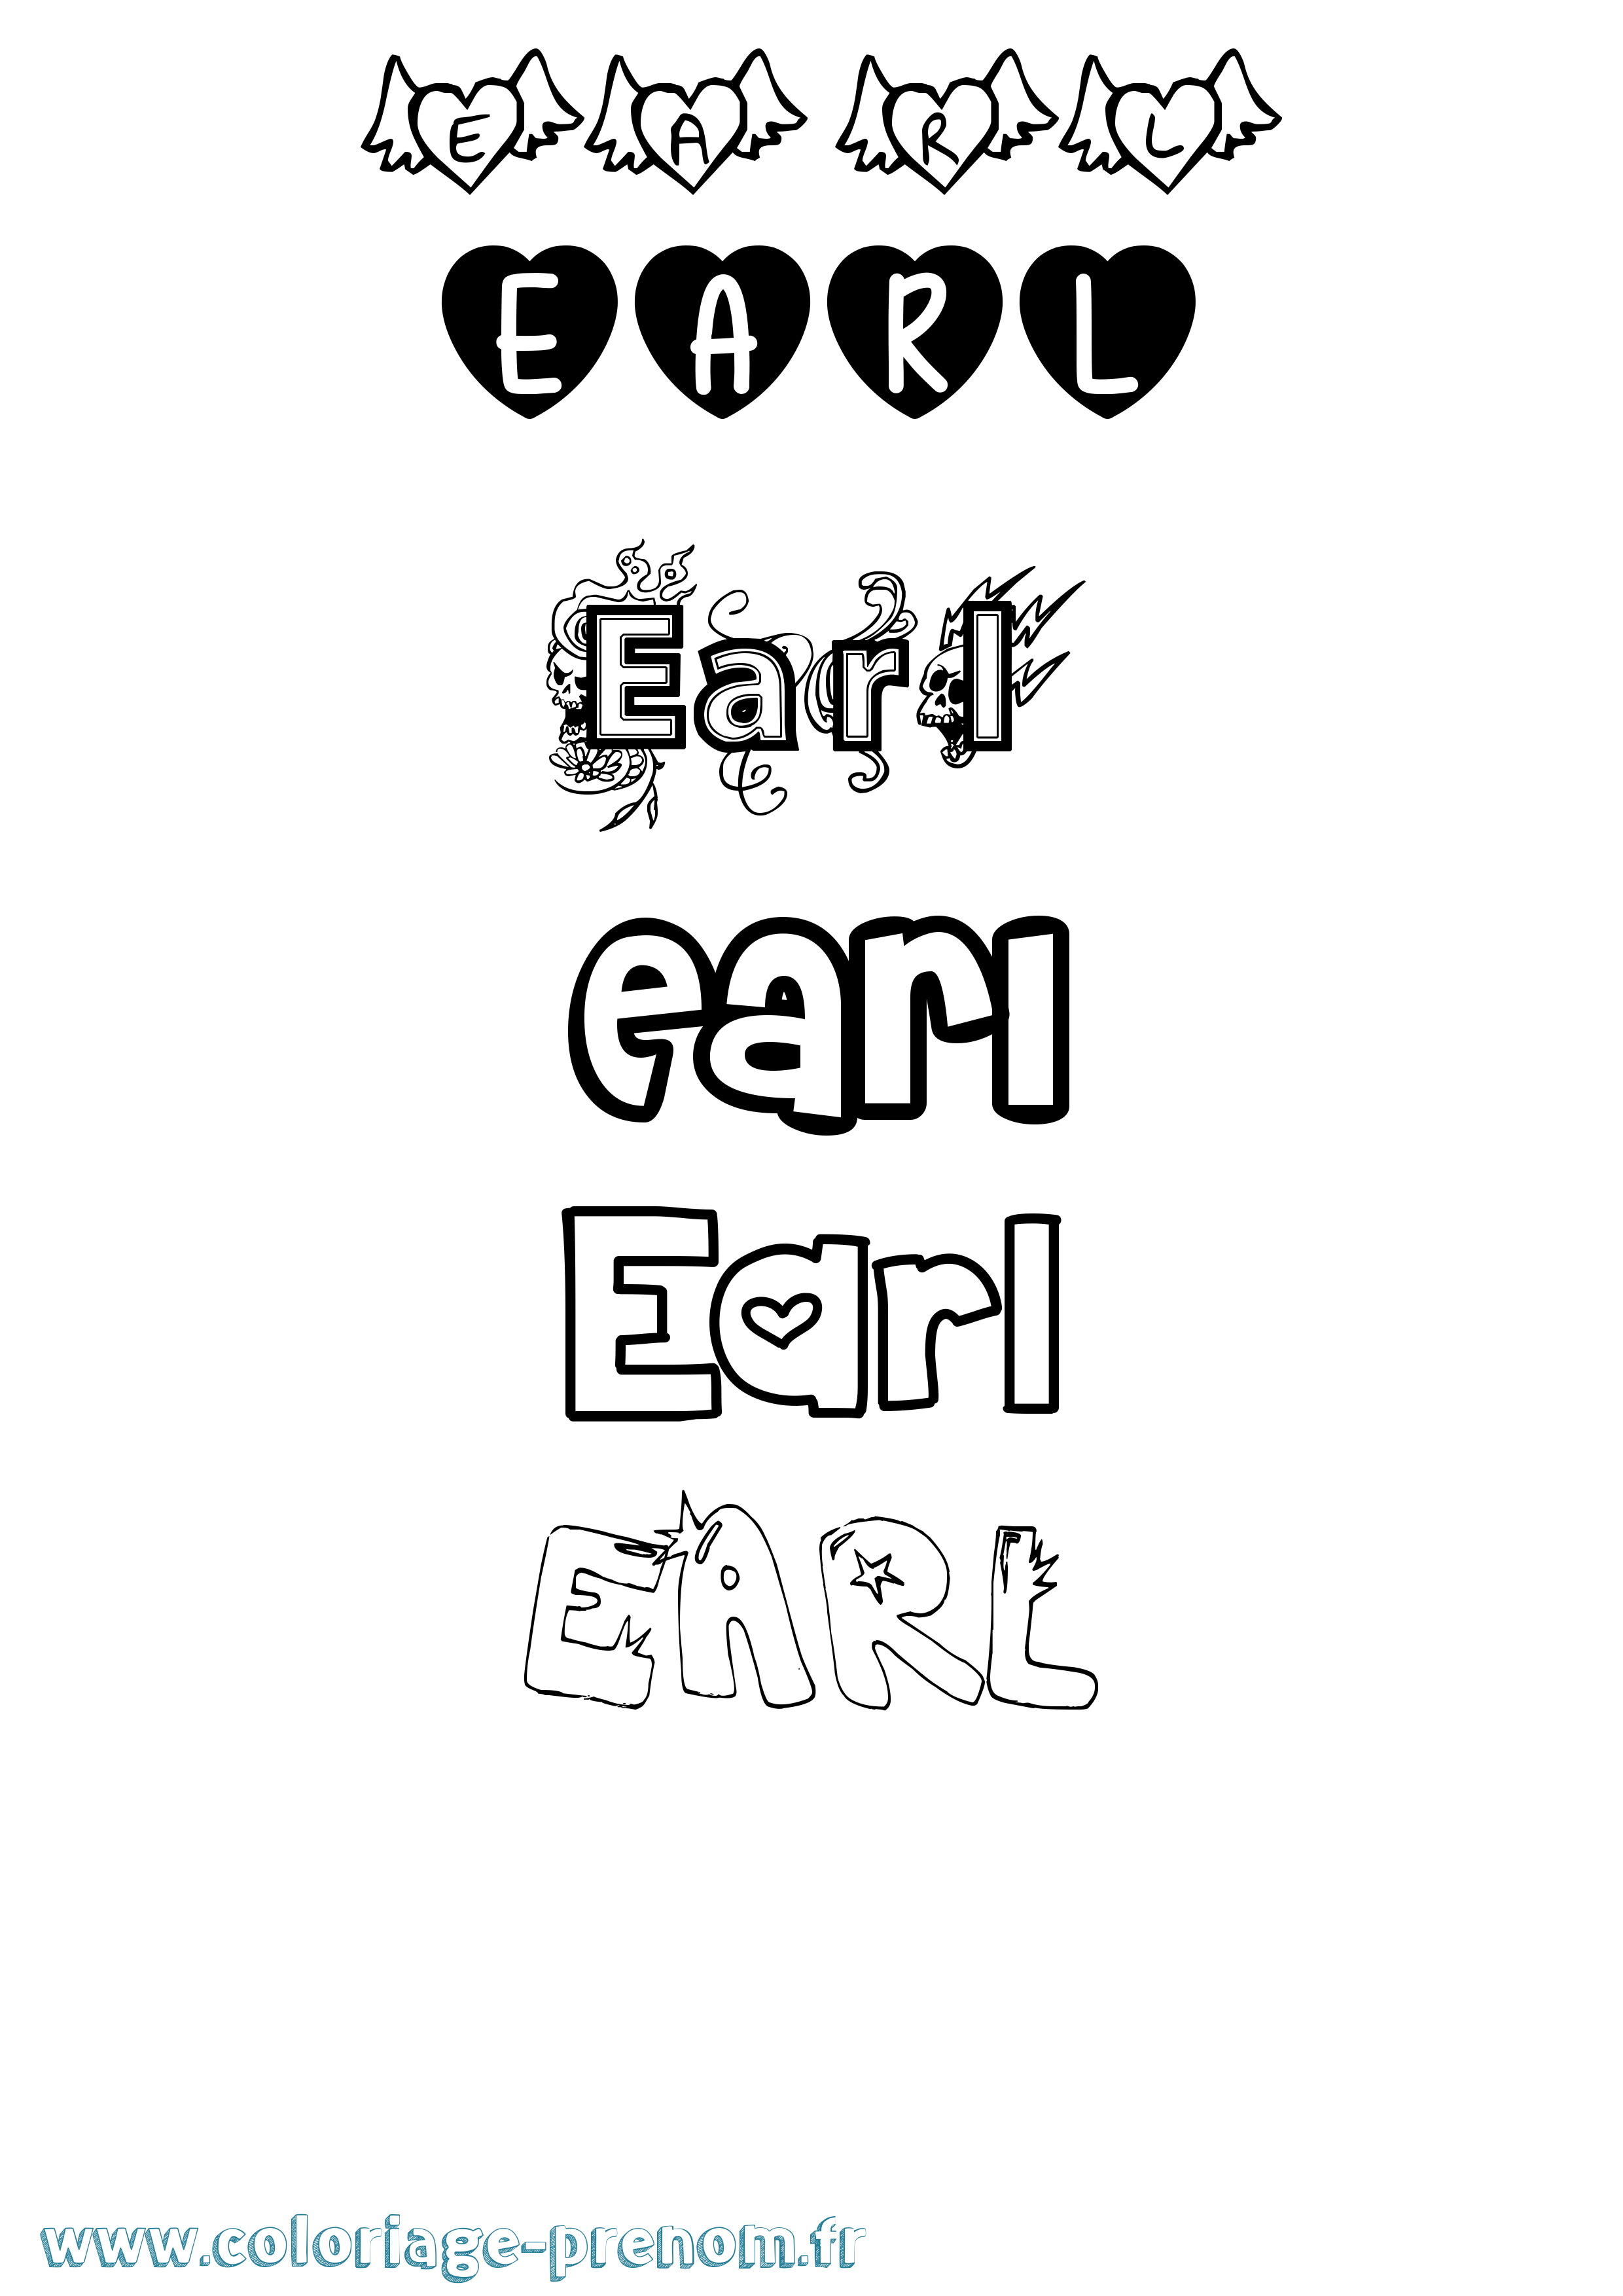 Coloriage prénom Earl Girly